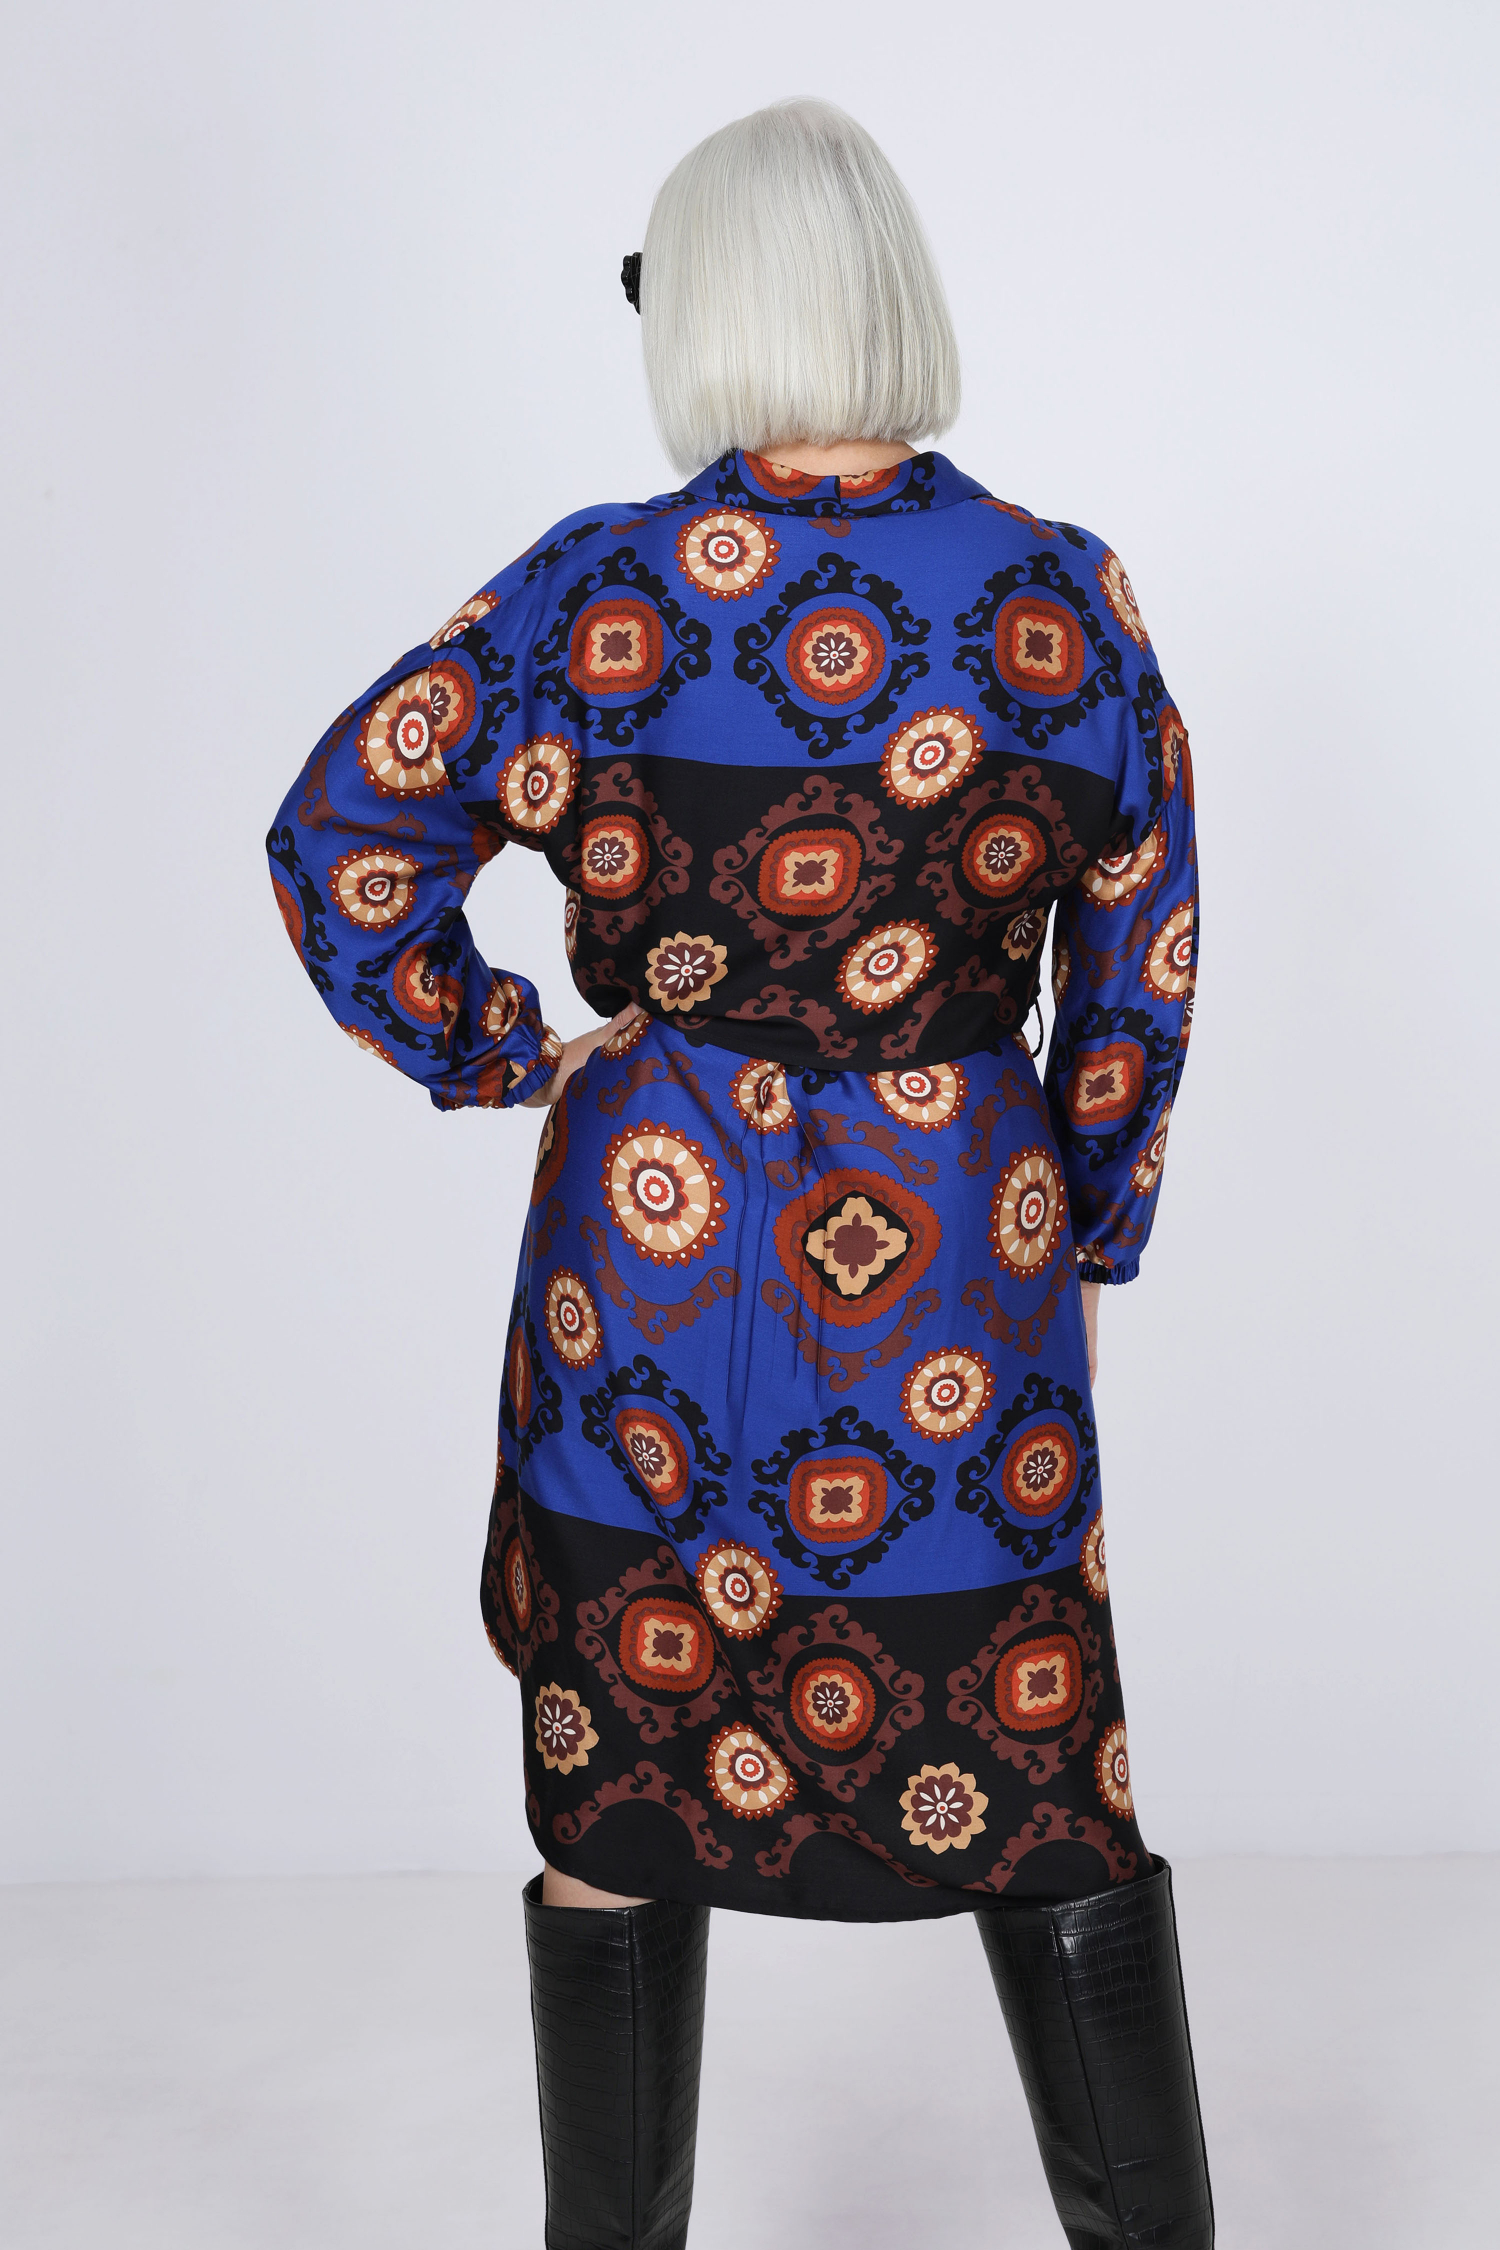 Shirt dress with base pattern.